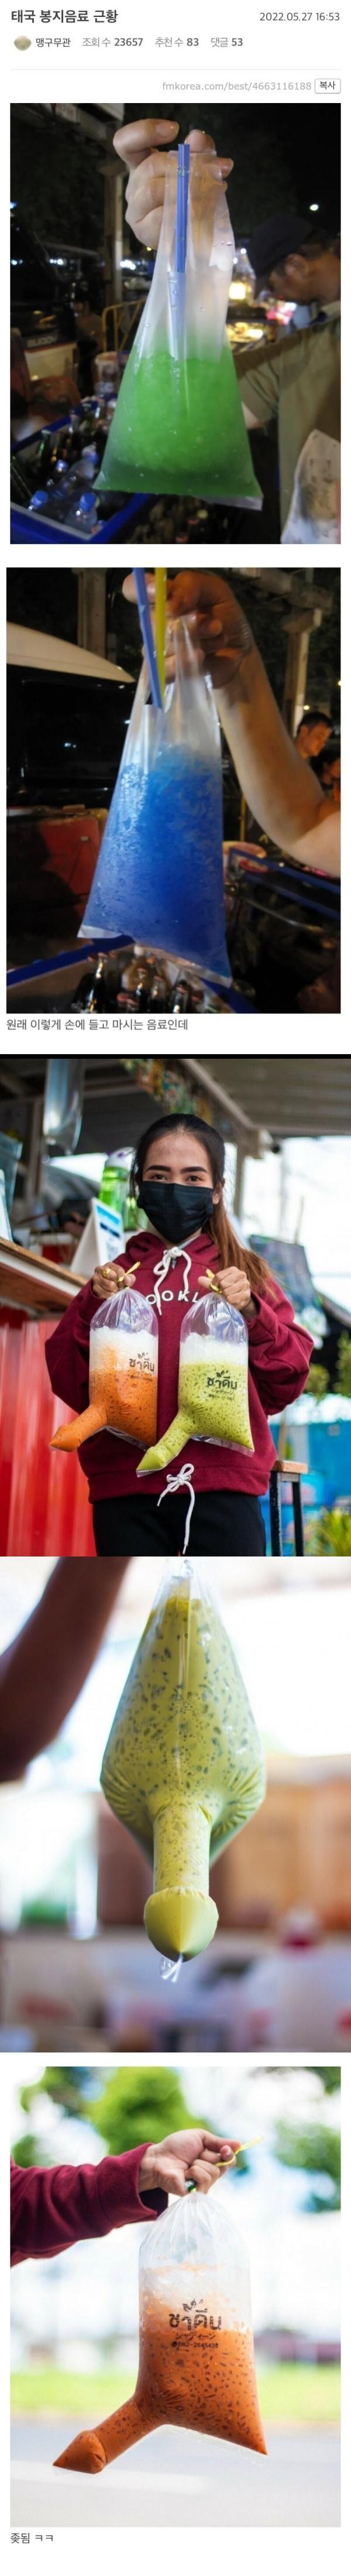 태국  봉지 음료  근황